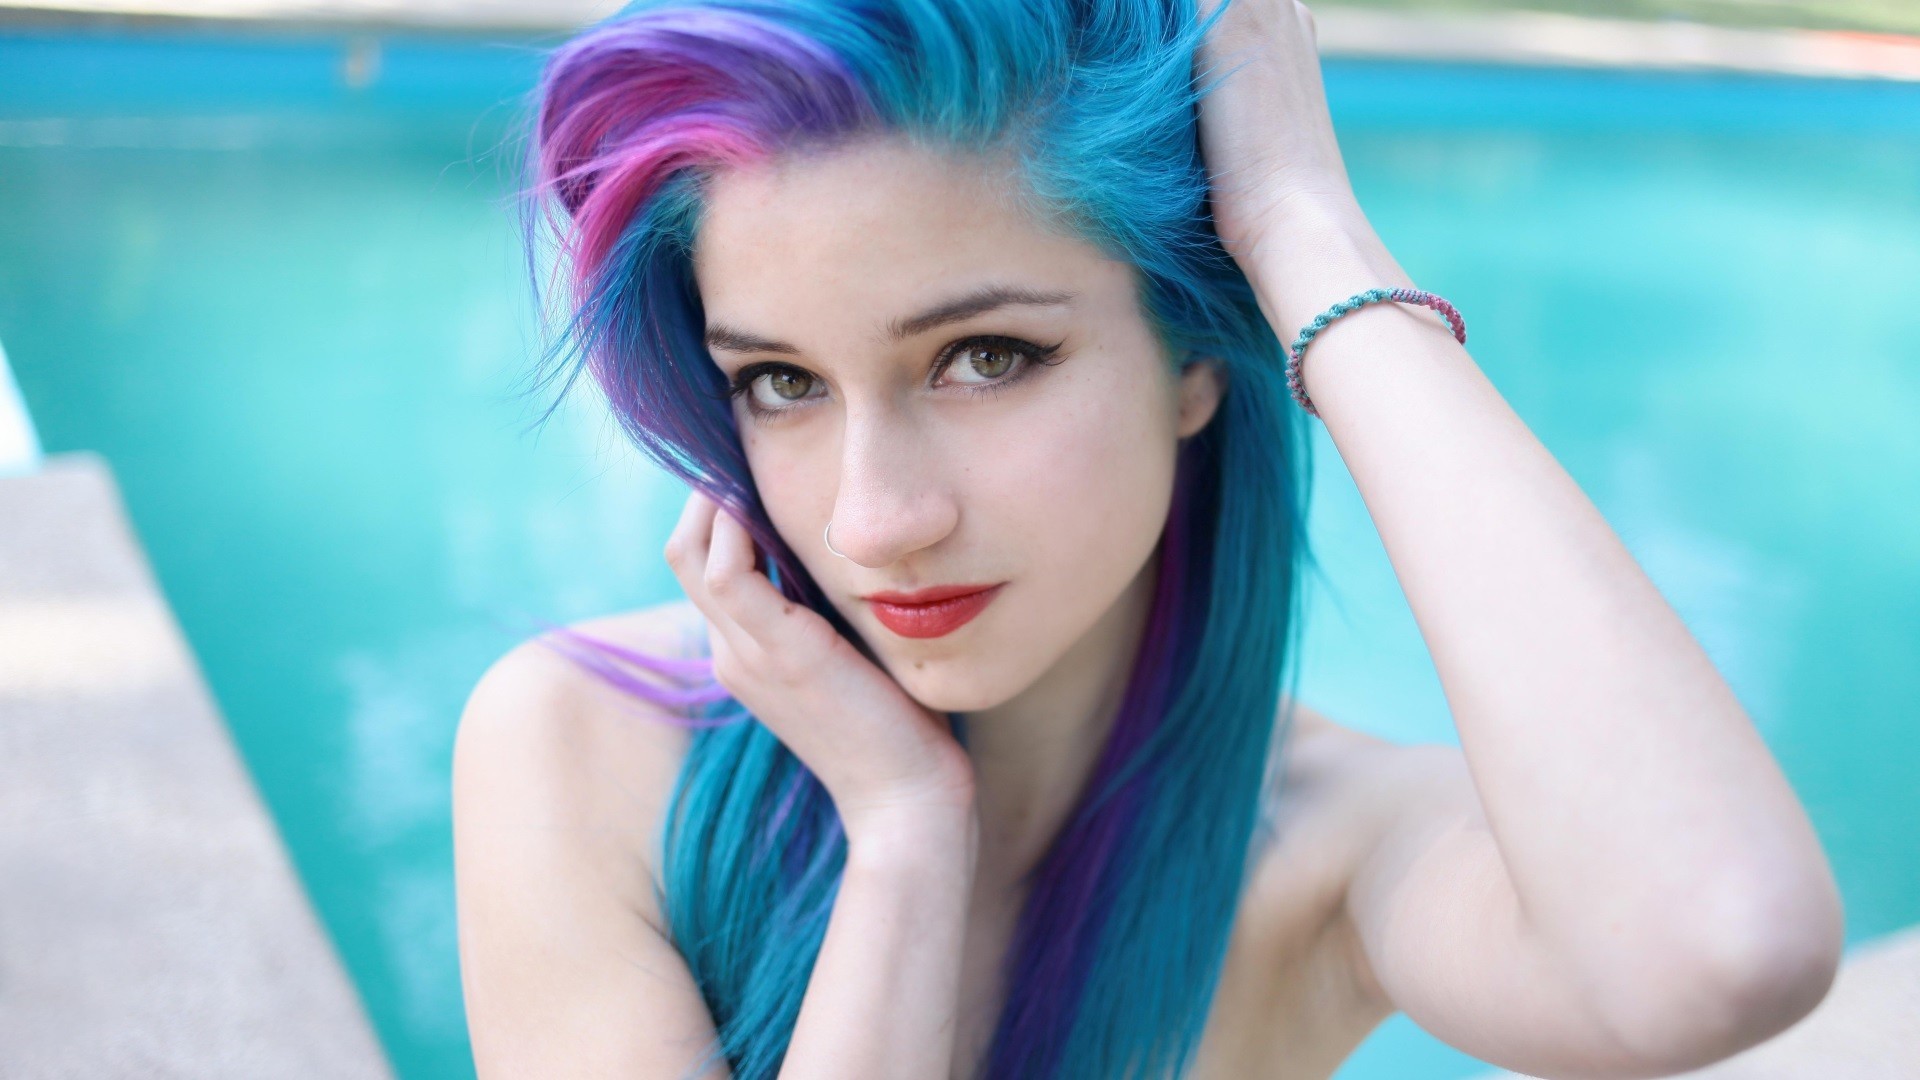 Blue Hair Girl Fanart - wide 3